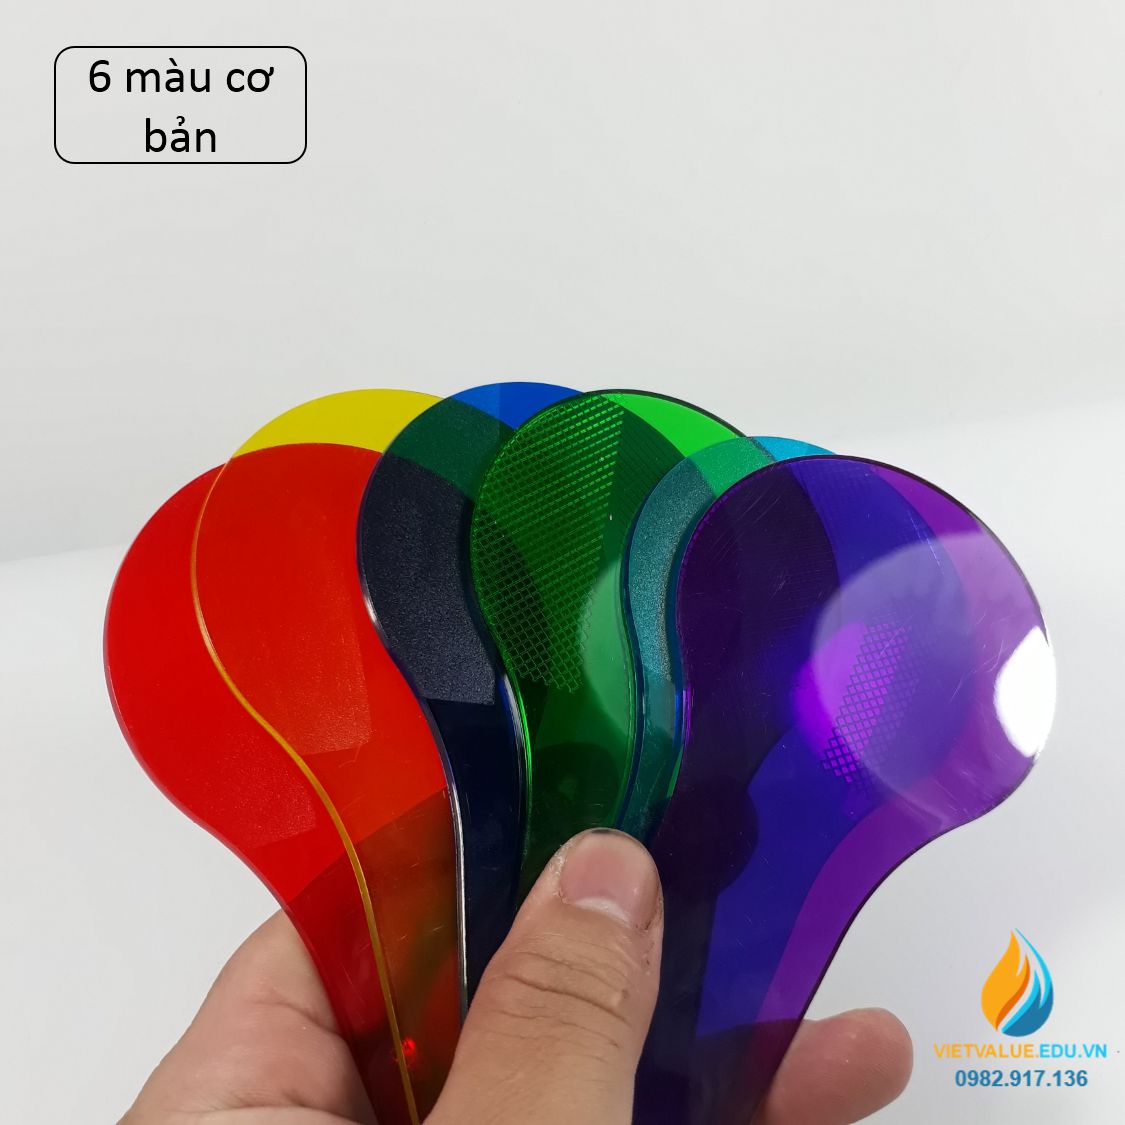 Bộ 6 tấm tính màu tổng hợp màu sắc ánh sáng, dụng cụ thực hành quang học